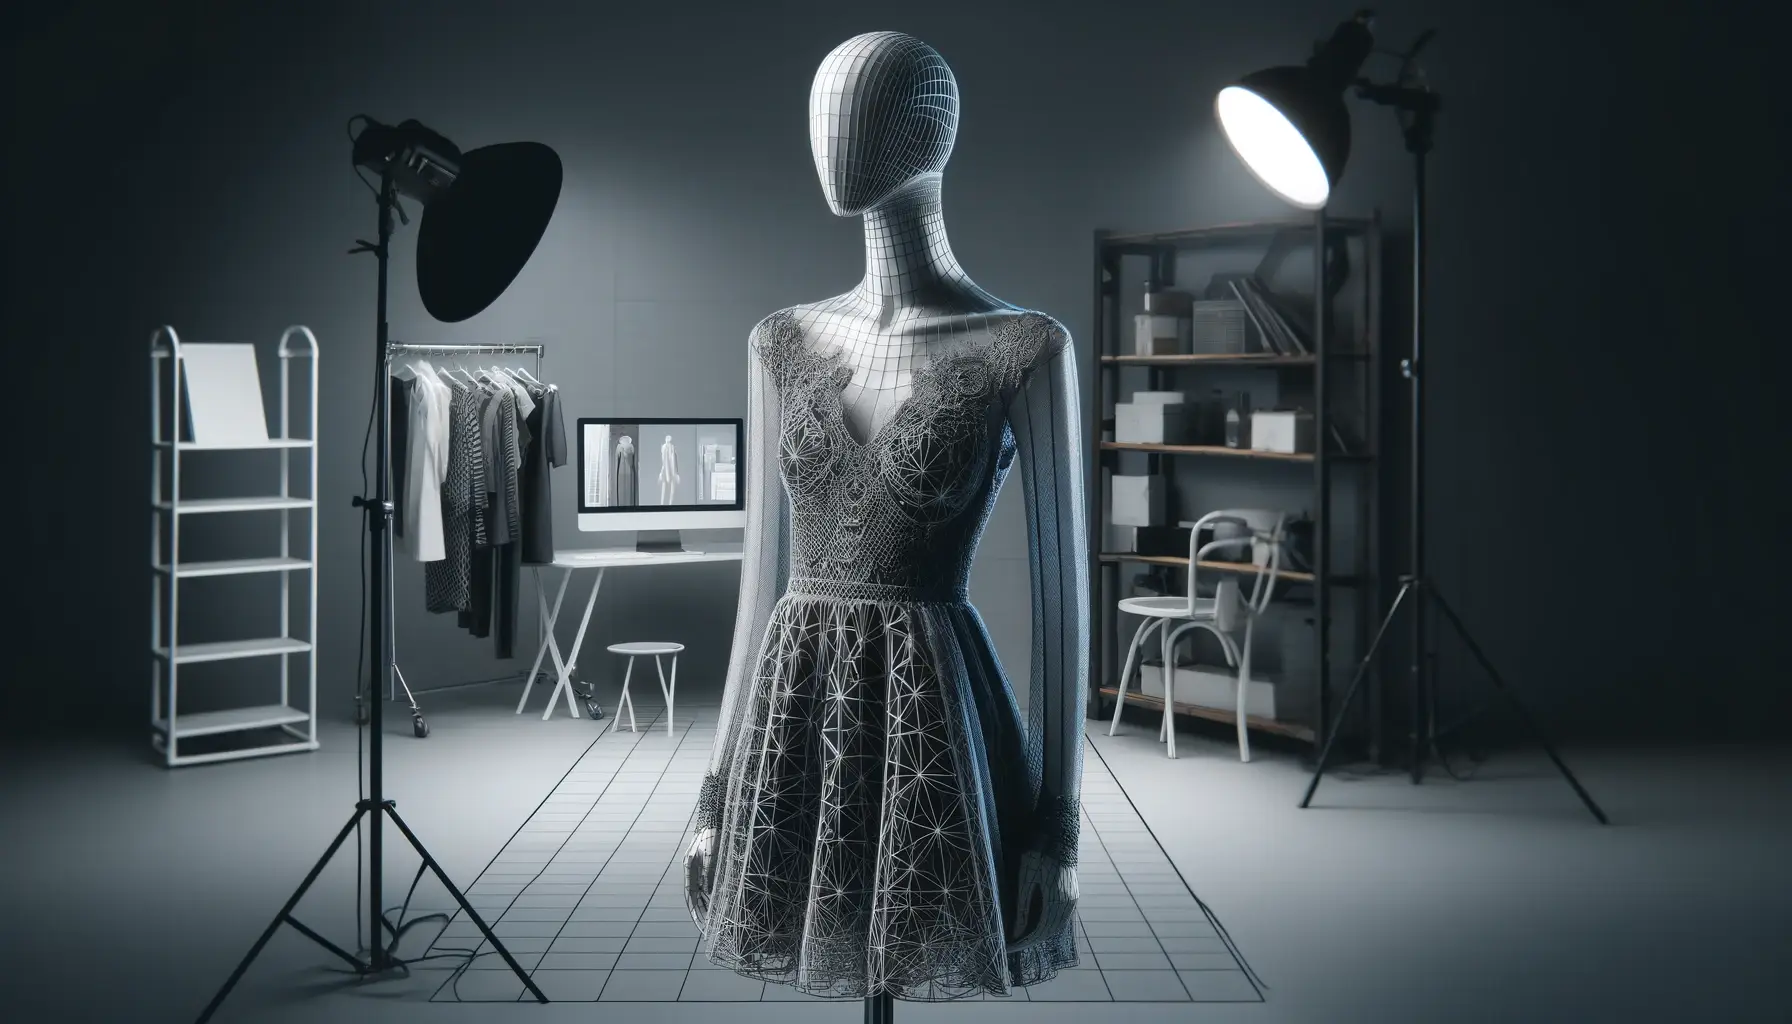 Produktfotografie, Bekleidung und Textilien fotografieren als Hollow Man oder im Ghost Mannequin Style